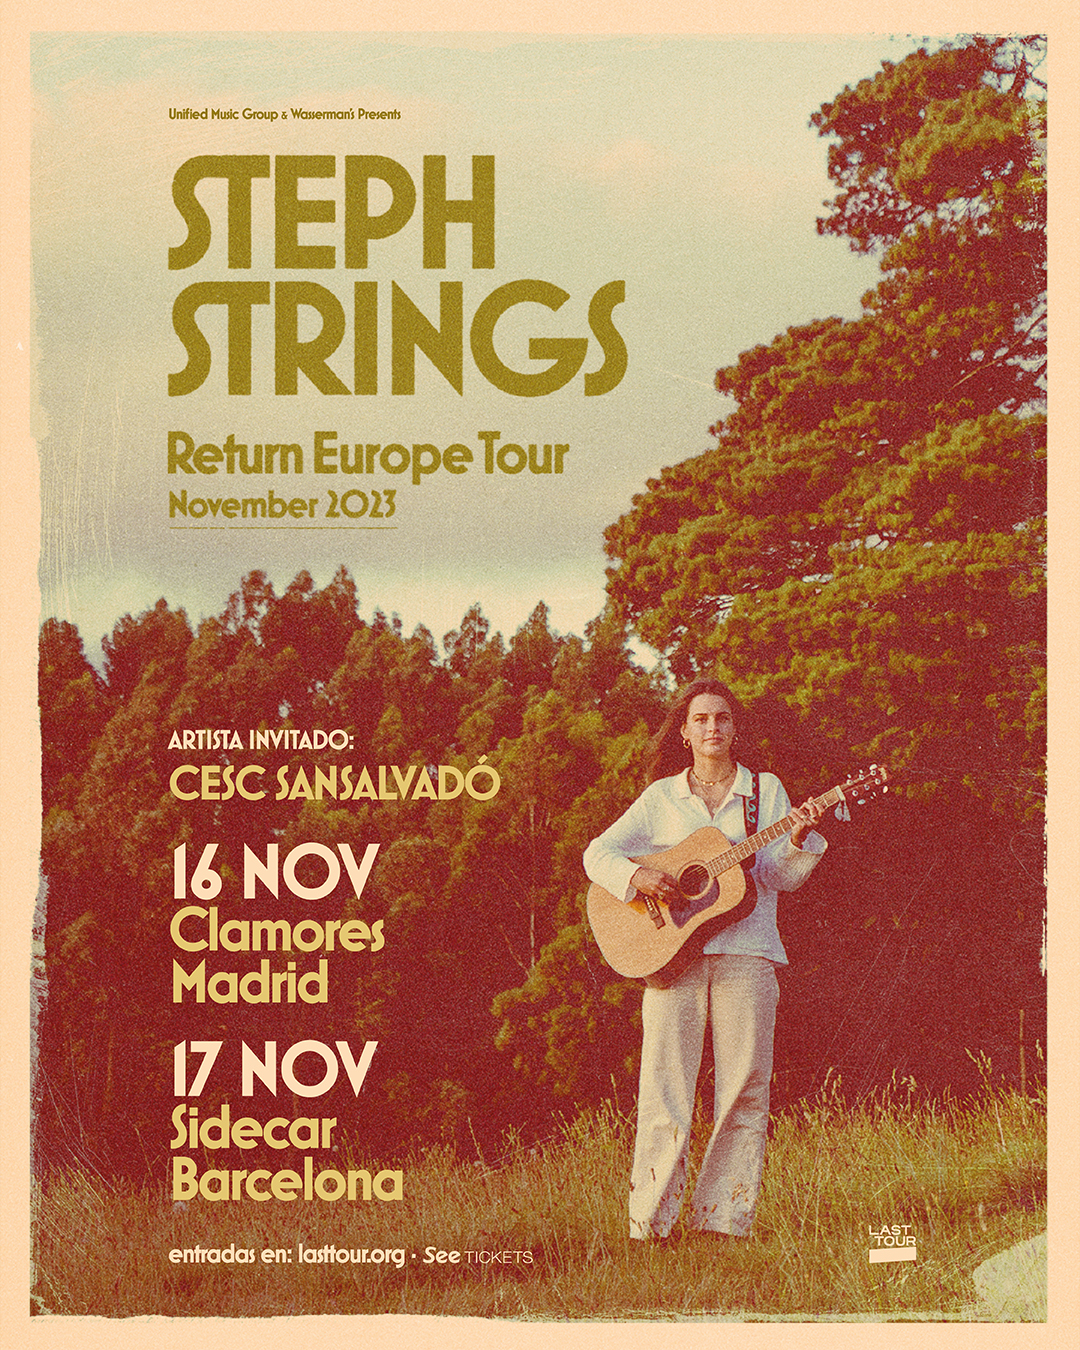 Concierto de Steph Strings en Madrid y Barcelona.